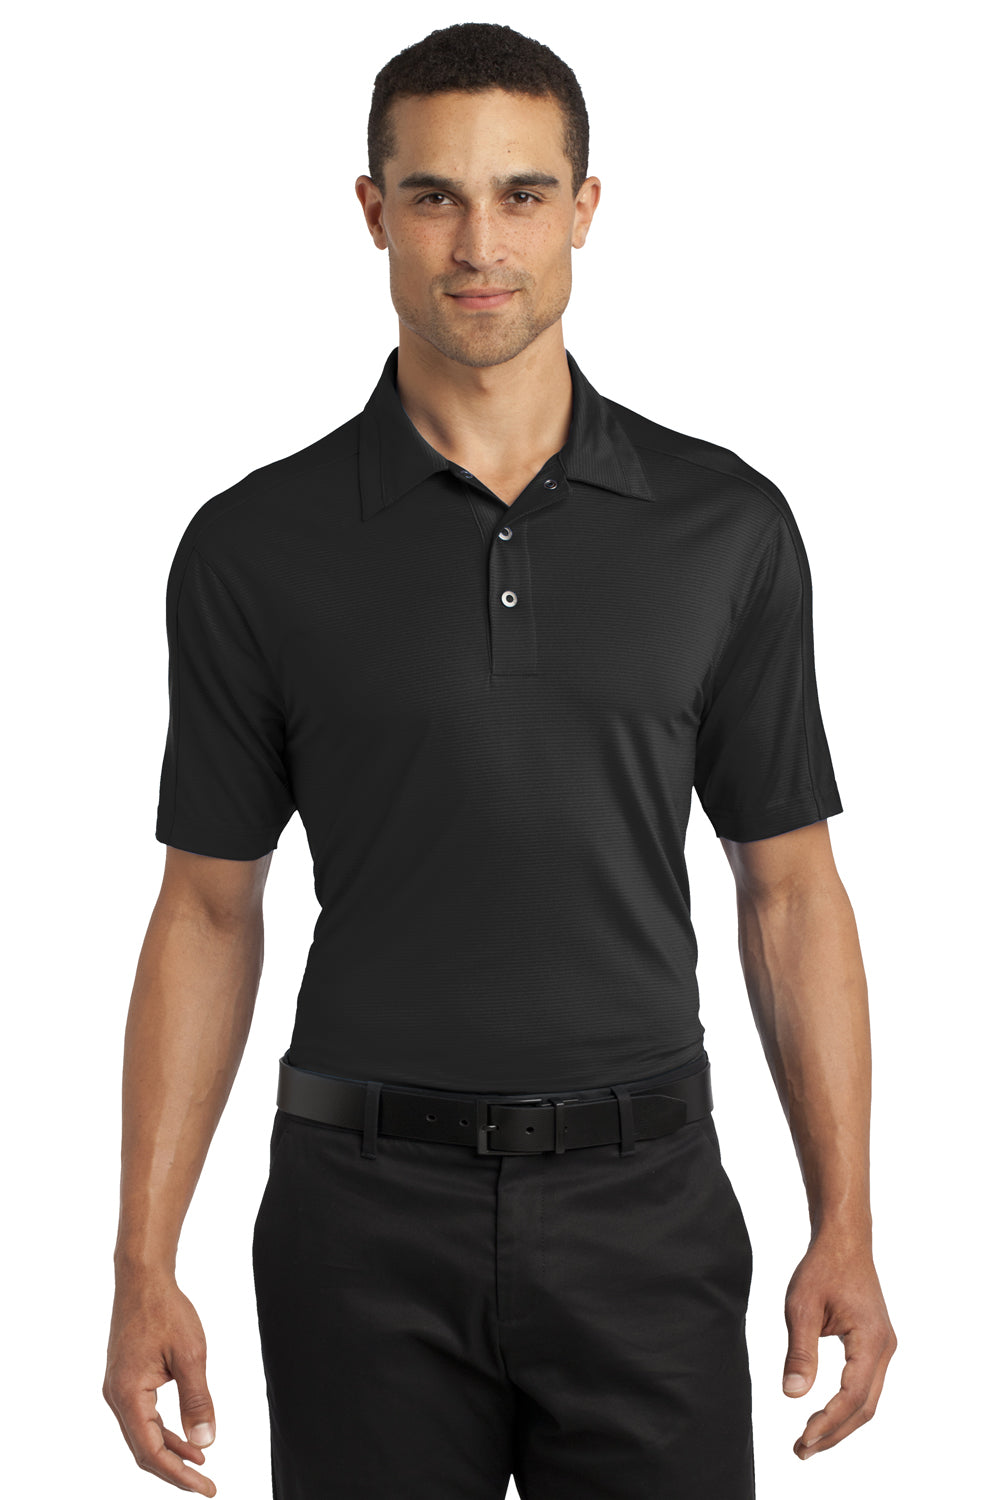 Ogio OG1030 Mens Linear Moisture Wicking Short Sleeve Polo Shirt Black Front